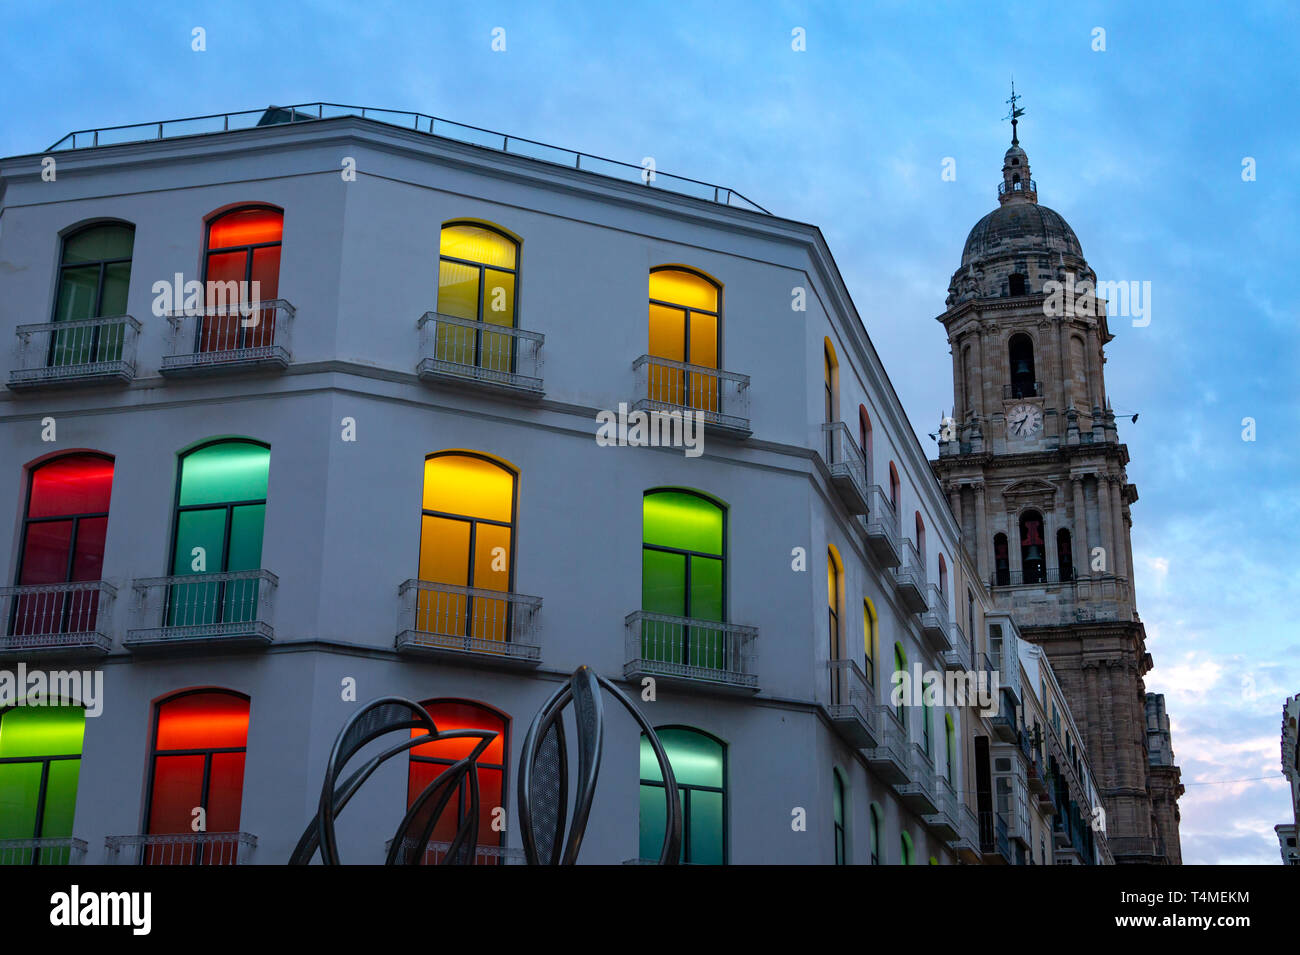 Lumières colorées dans windows d'un bâtiment dans la cathédrale de Malaga Espagne Banque D'Images